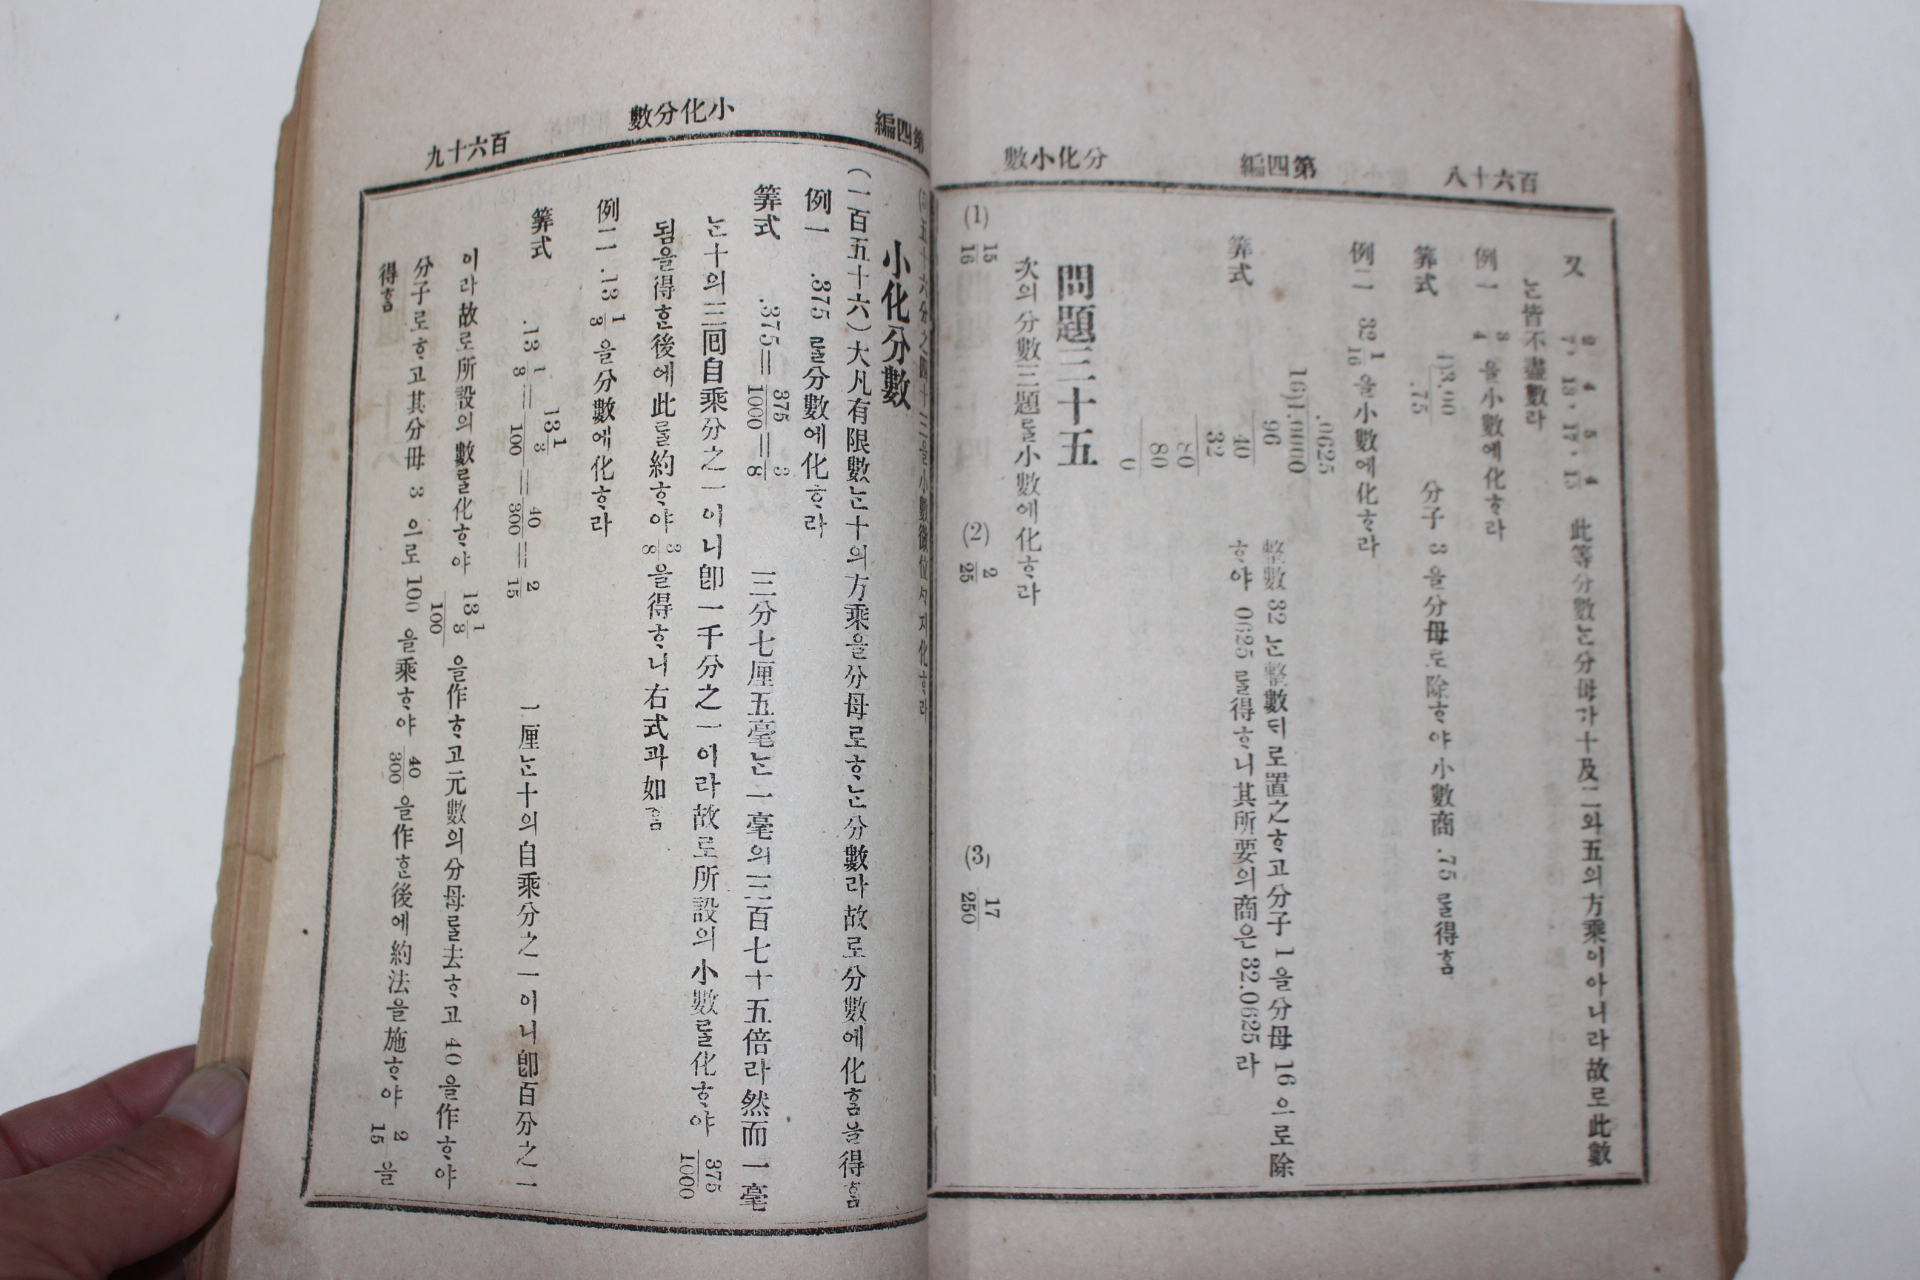 1907년(광무11년) 정선산학(精選算學)